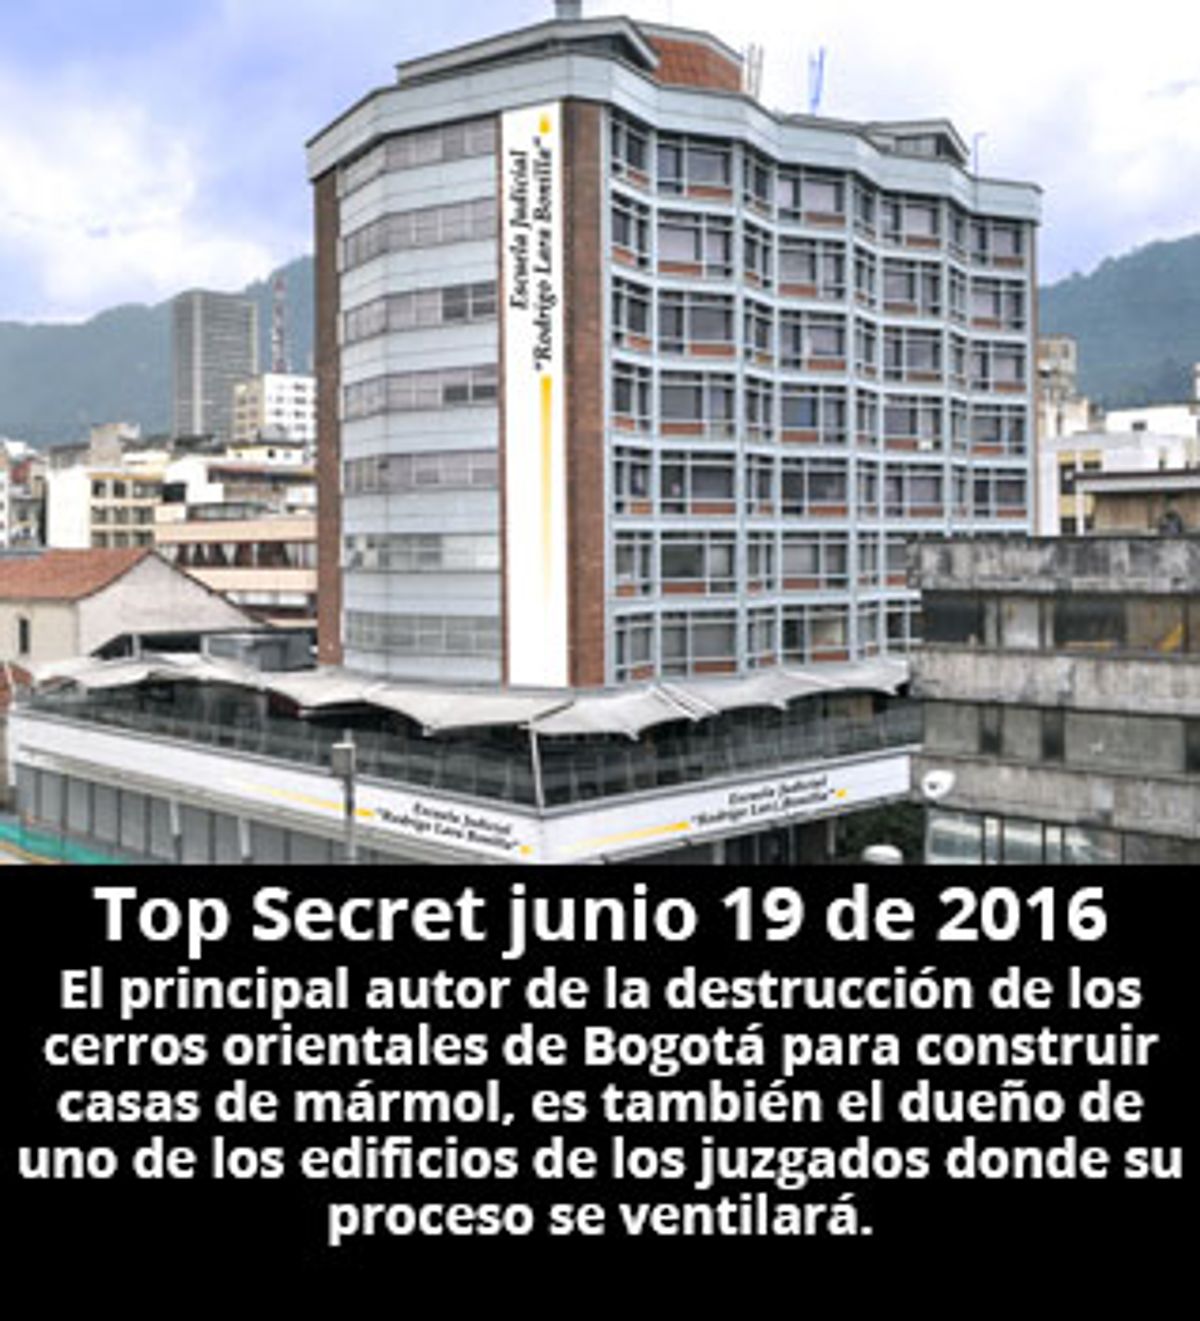 Top Secret junio 19 de 2016